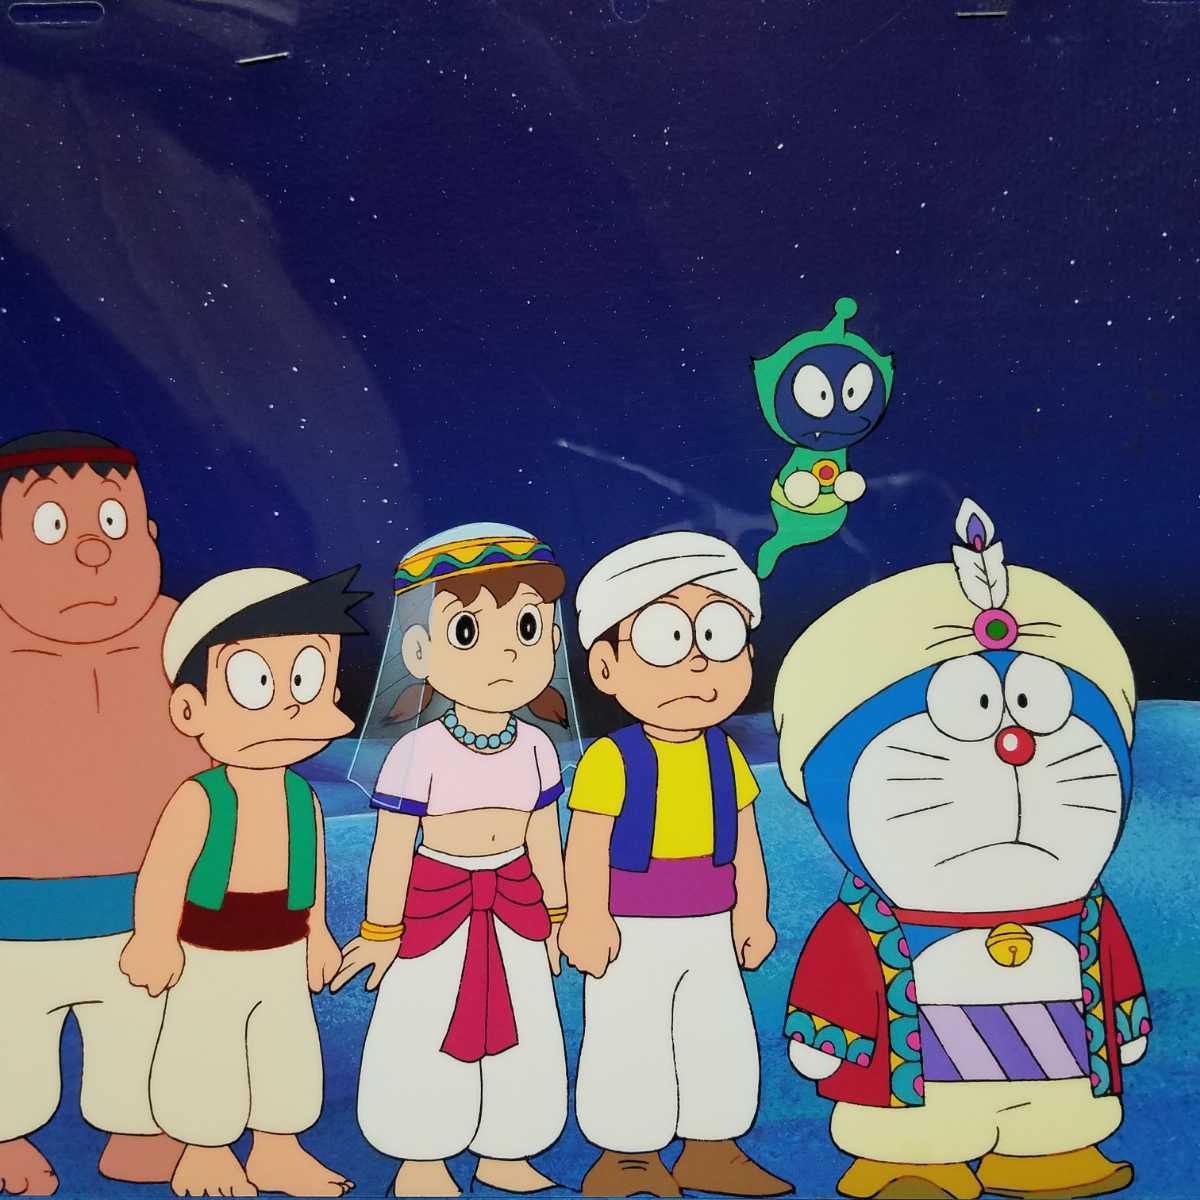 # избранные товары # Doraemon # цифровая картинка # фильм Doraemon рост futoshi. гонг bi Anna ito# глициния .*F* не 2 самец # аниме, редкость, не продается, аниме, manga (манга) #ad